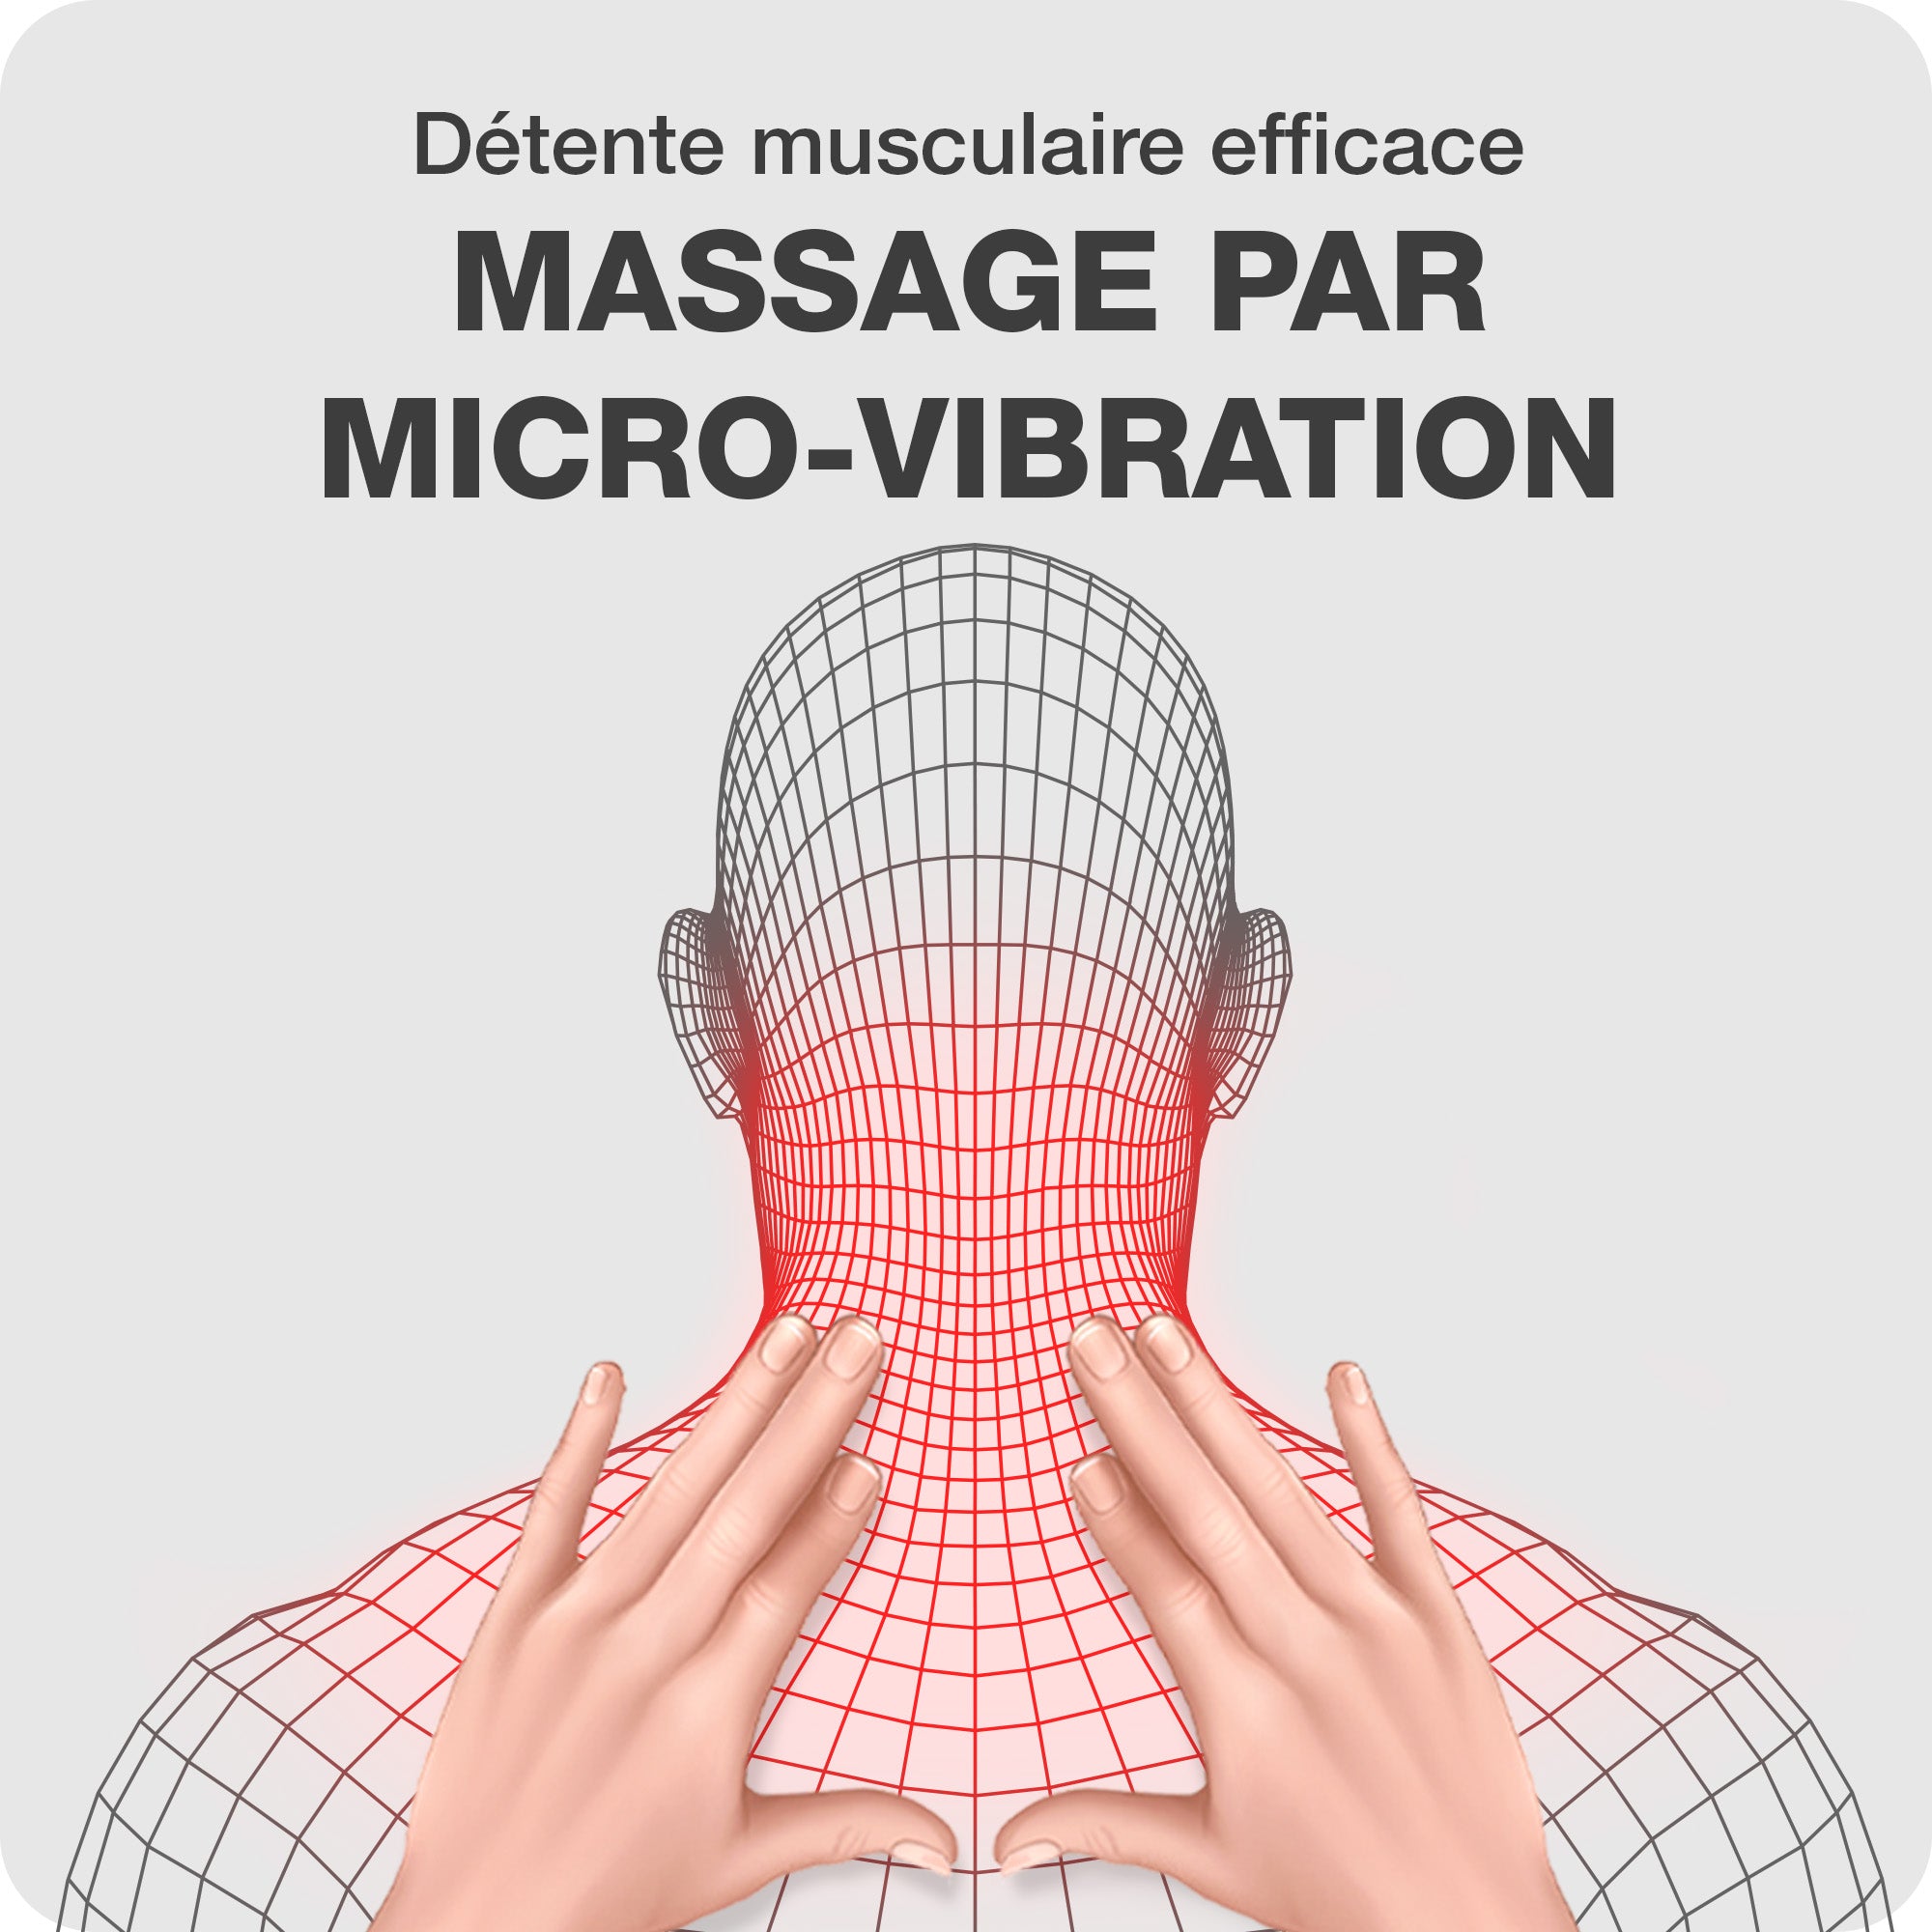 Bienfaits du massage par micro-vibration